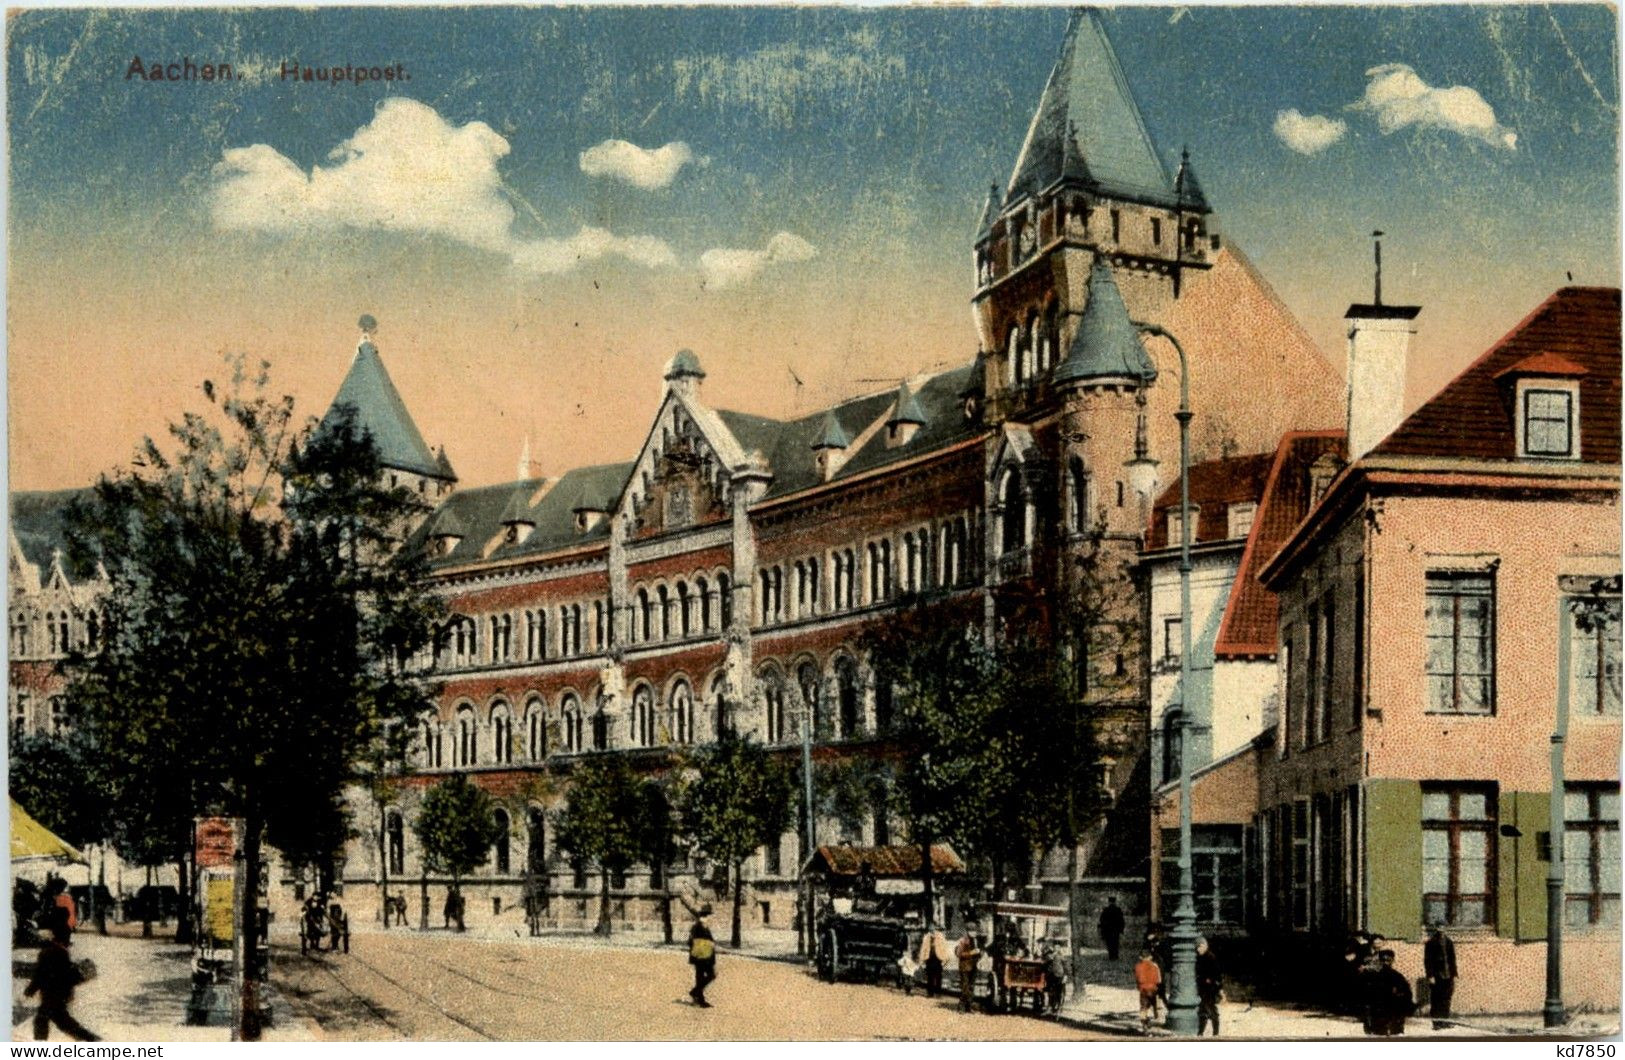 Aachen - Hauptpost - Aachen